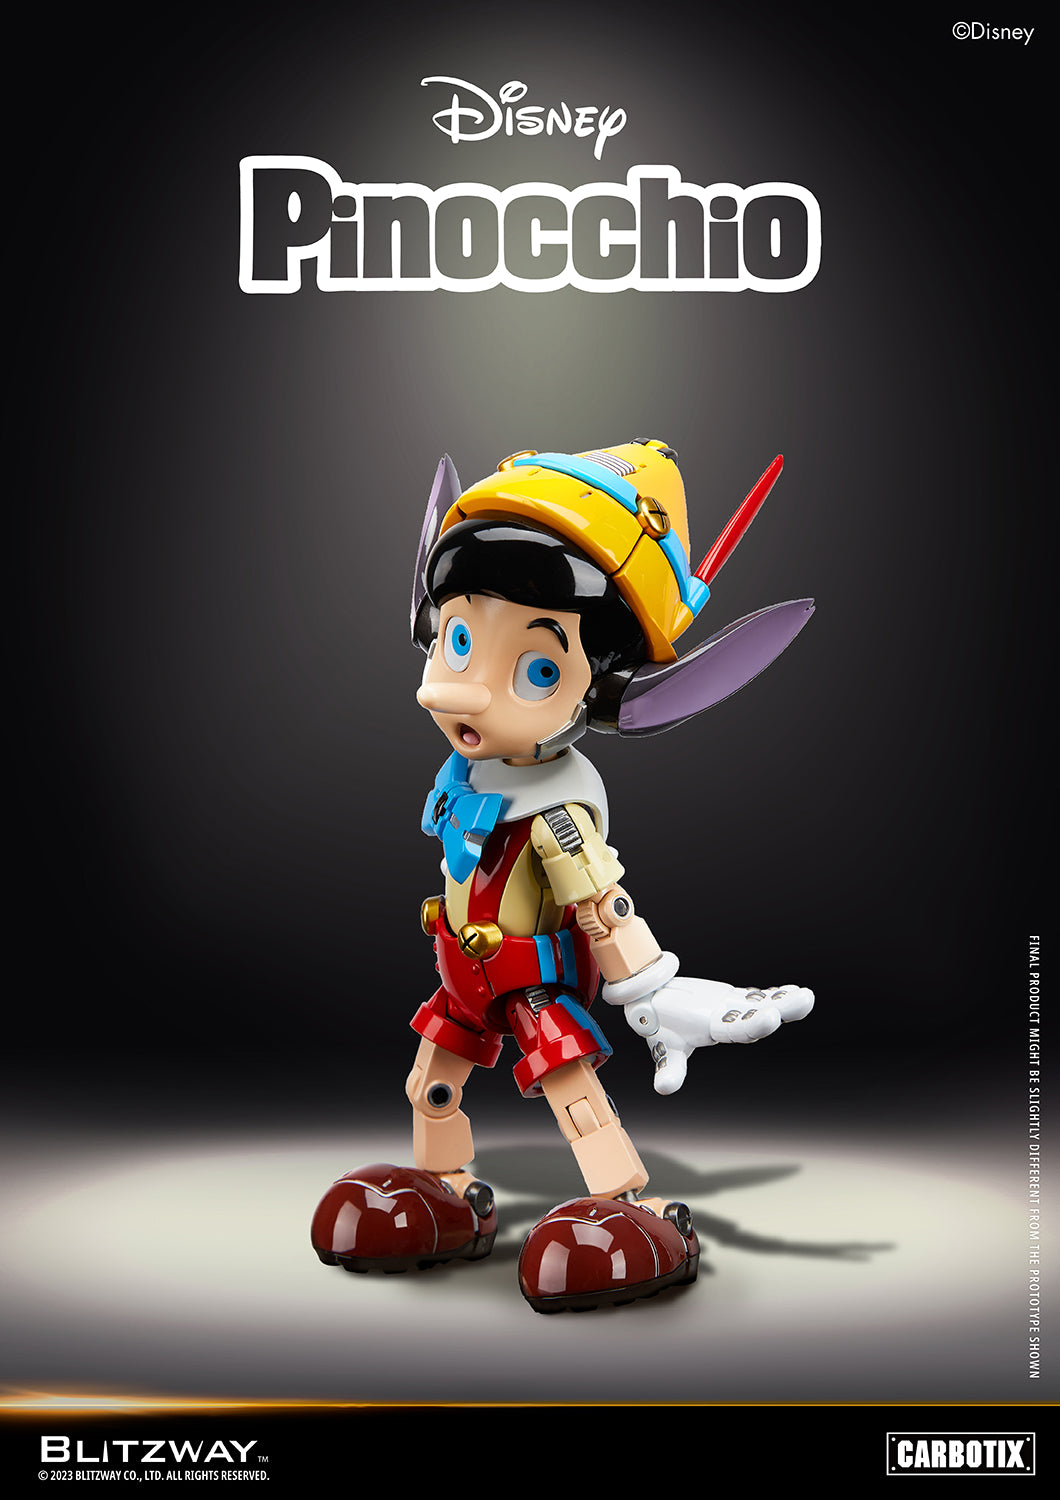 Blitzway - Carbotix - Disney&#39;s Pinocchio - Marvelous Toys